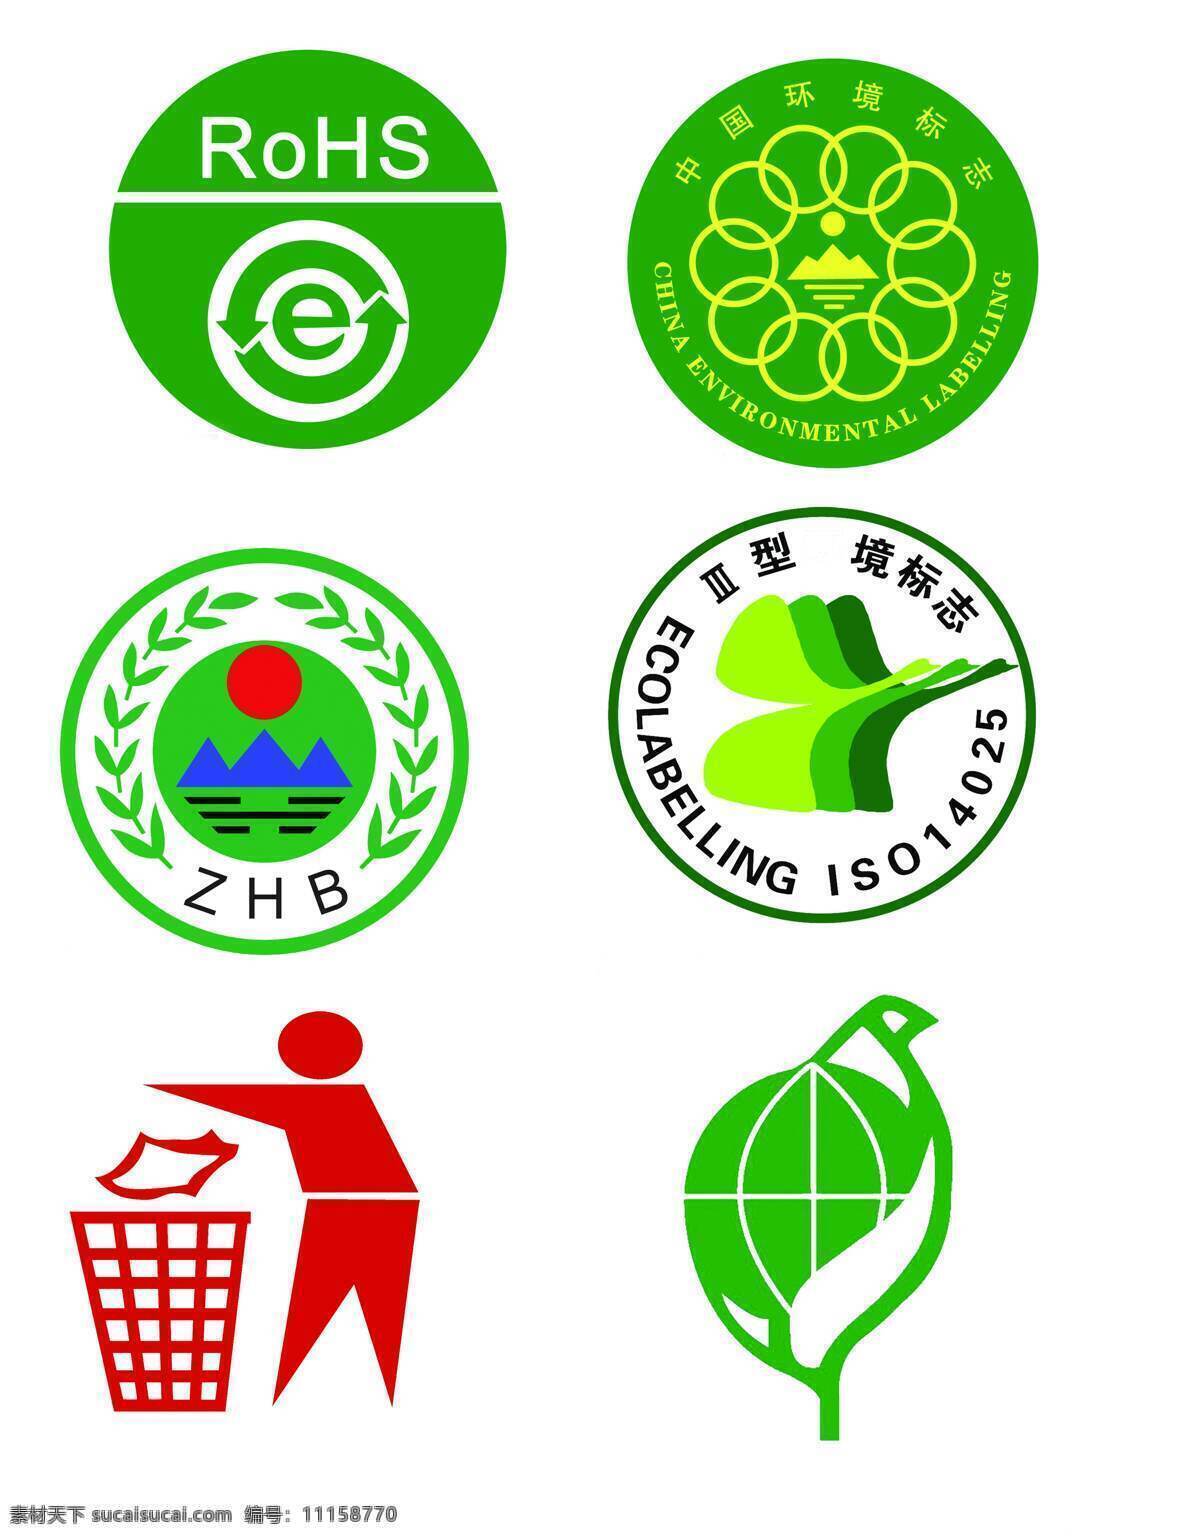 环保标志 zhb rohs 中国环境标志 中国环境 环保